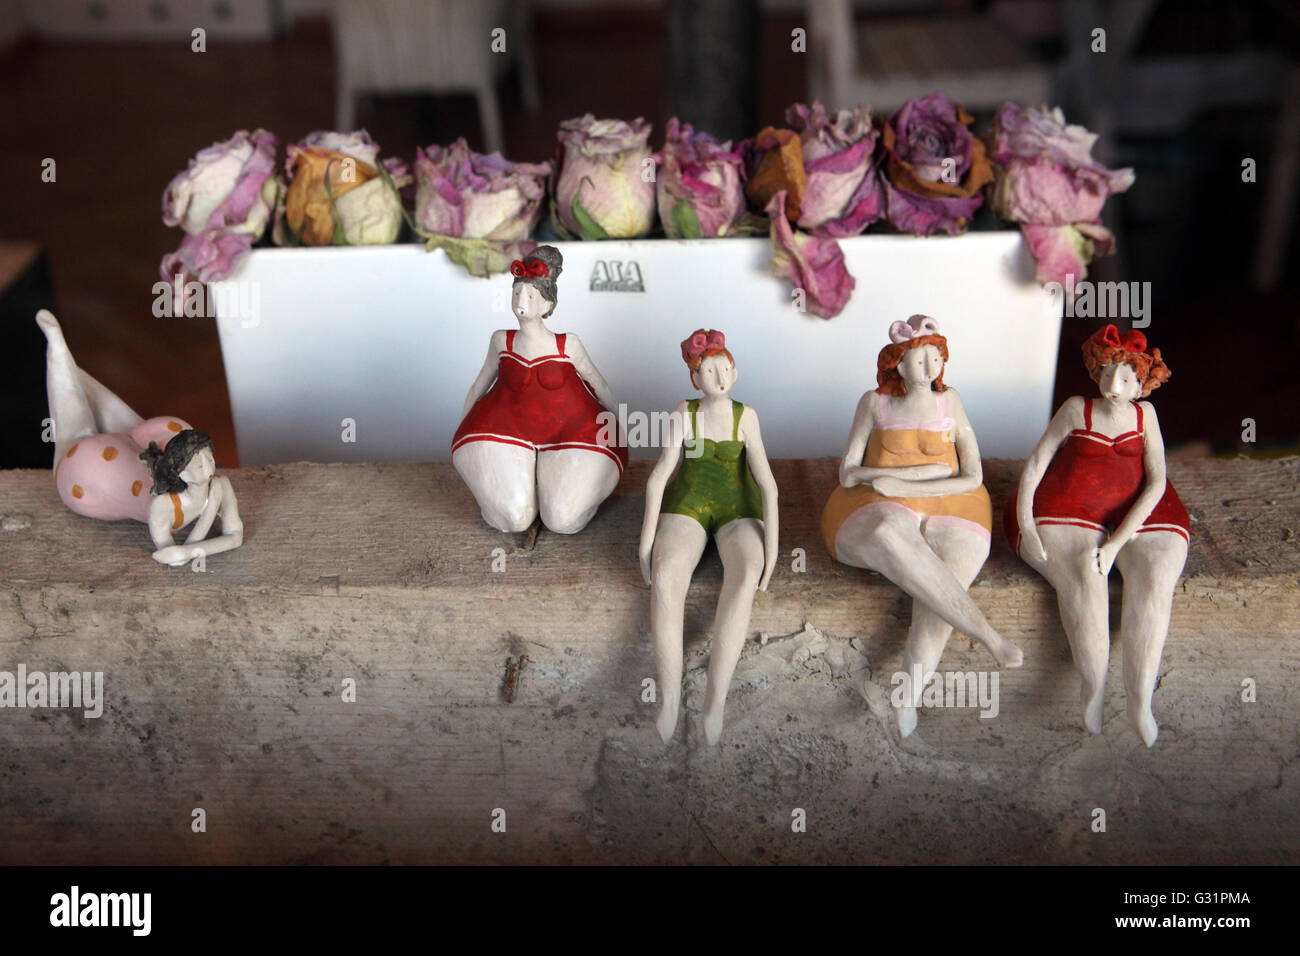 Zuerich, Suisse, chubby personnages féminins dans une vitrine Banque D'Images